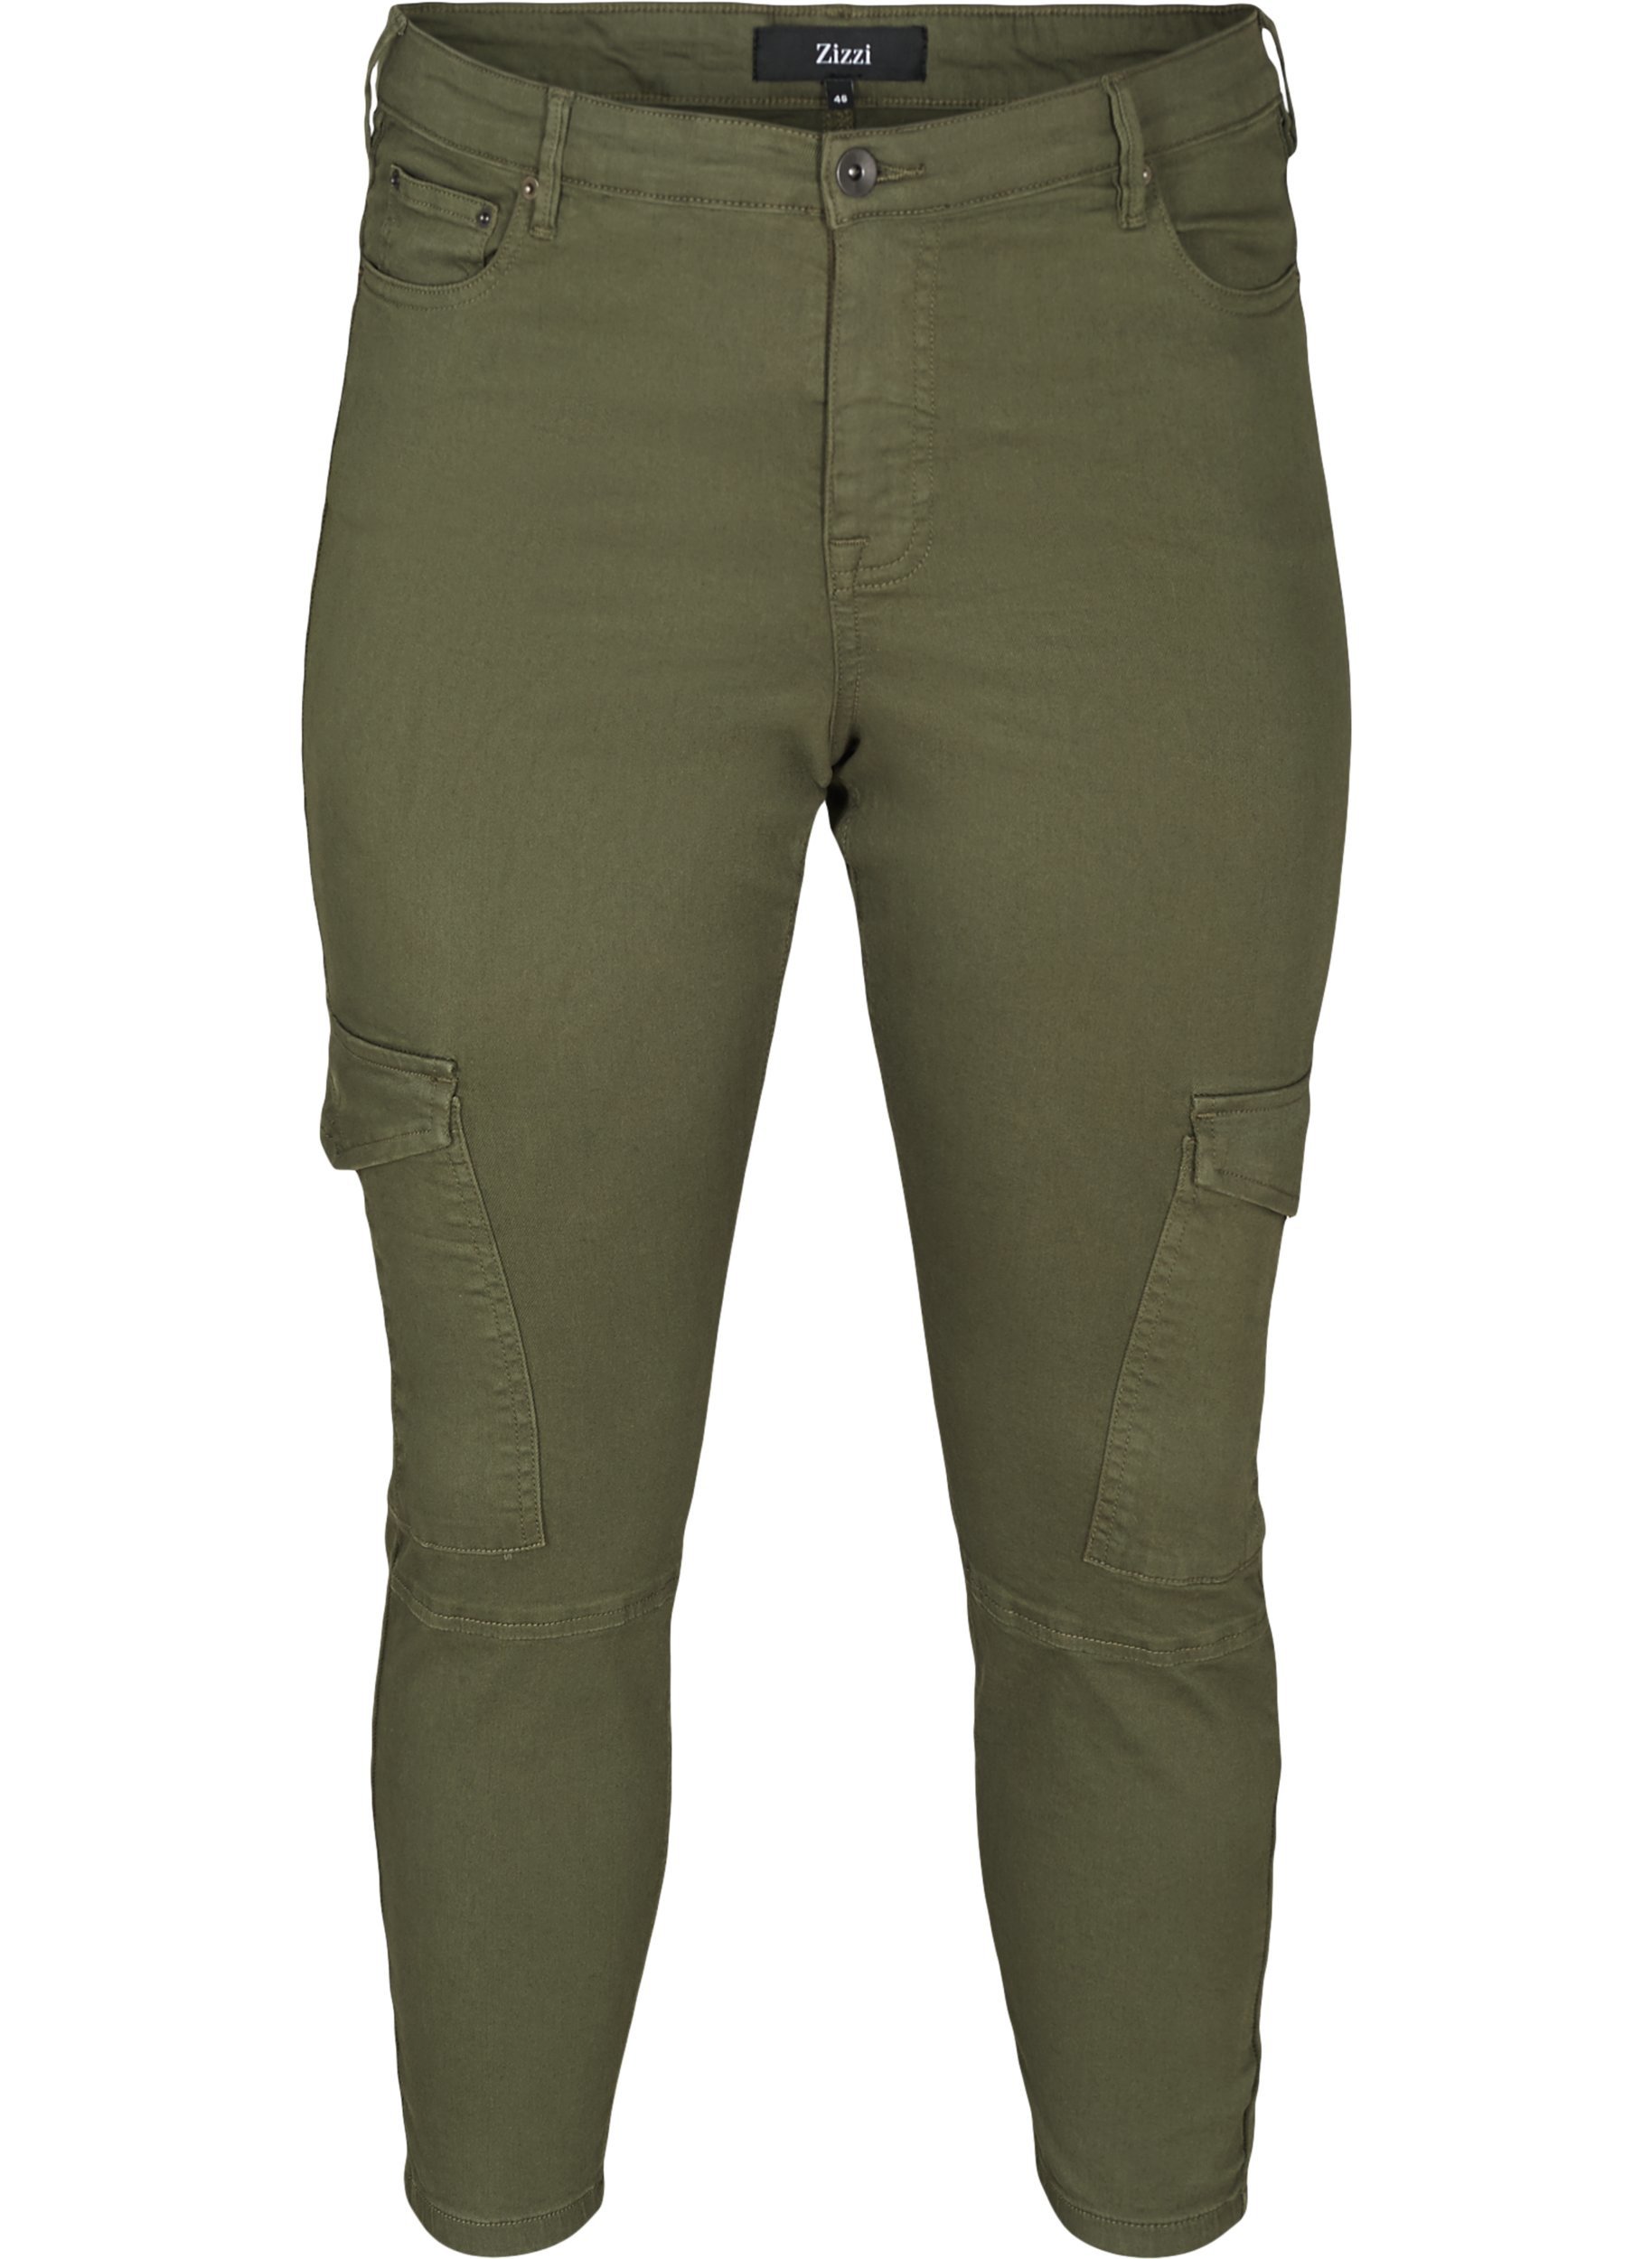 Bomulds bukser med ankellængde, Army green 